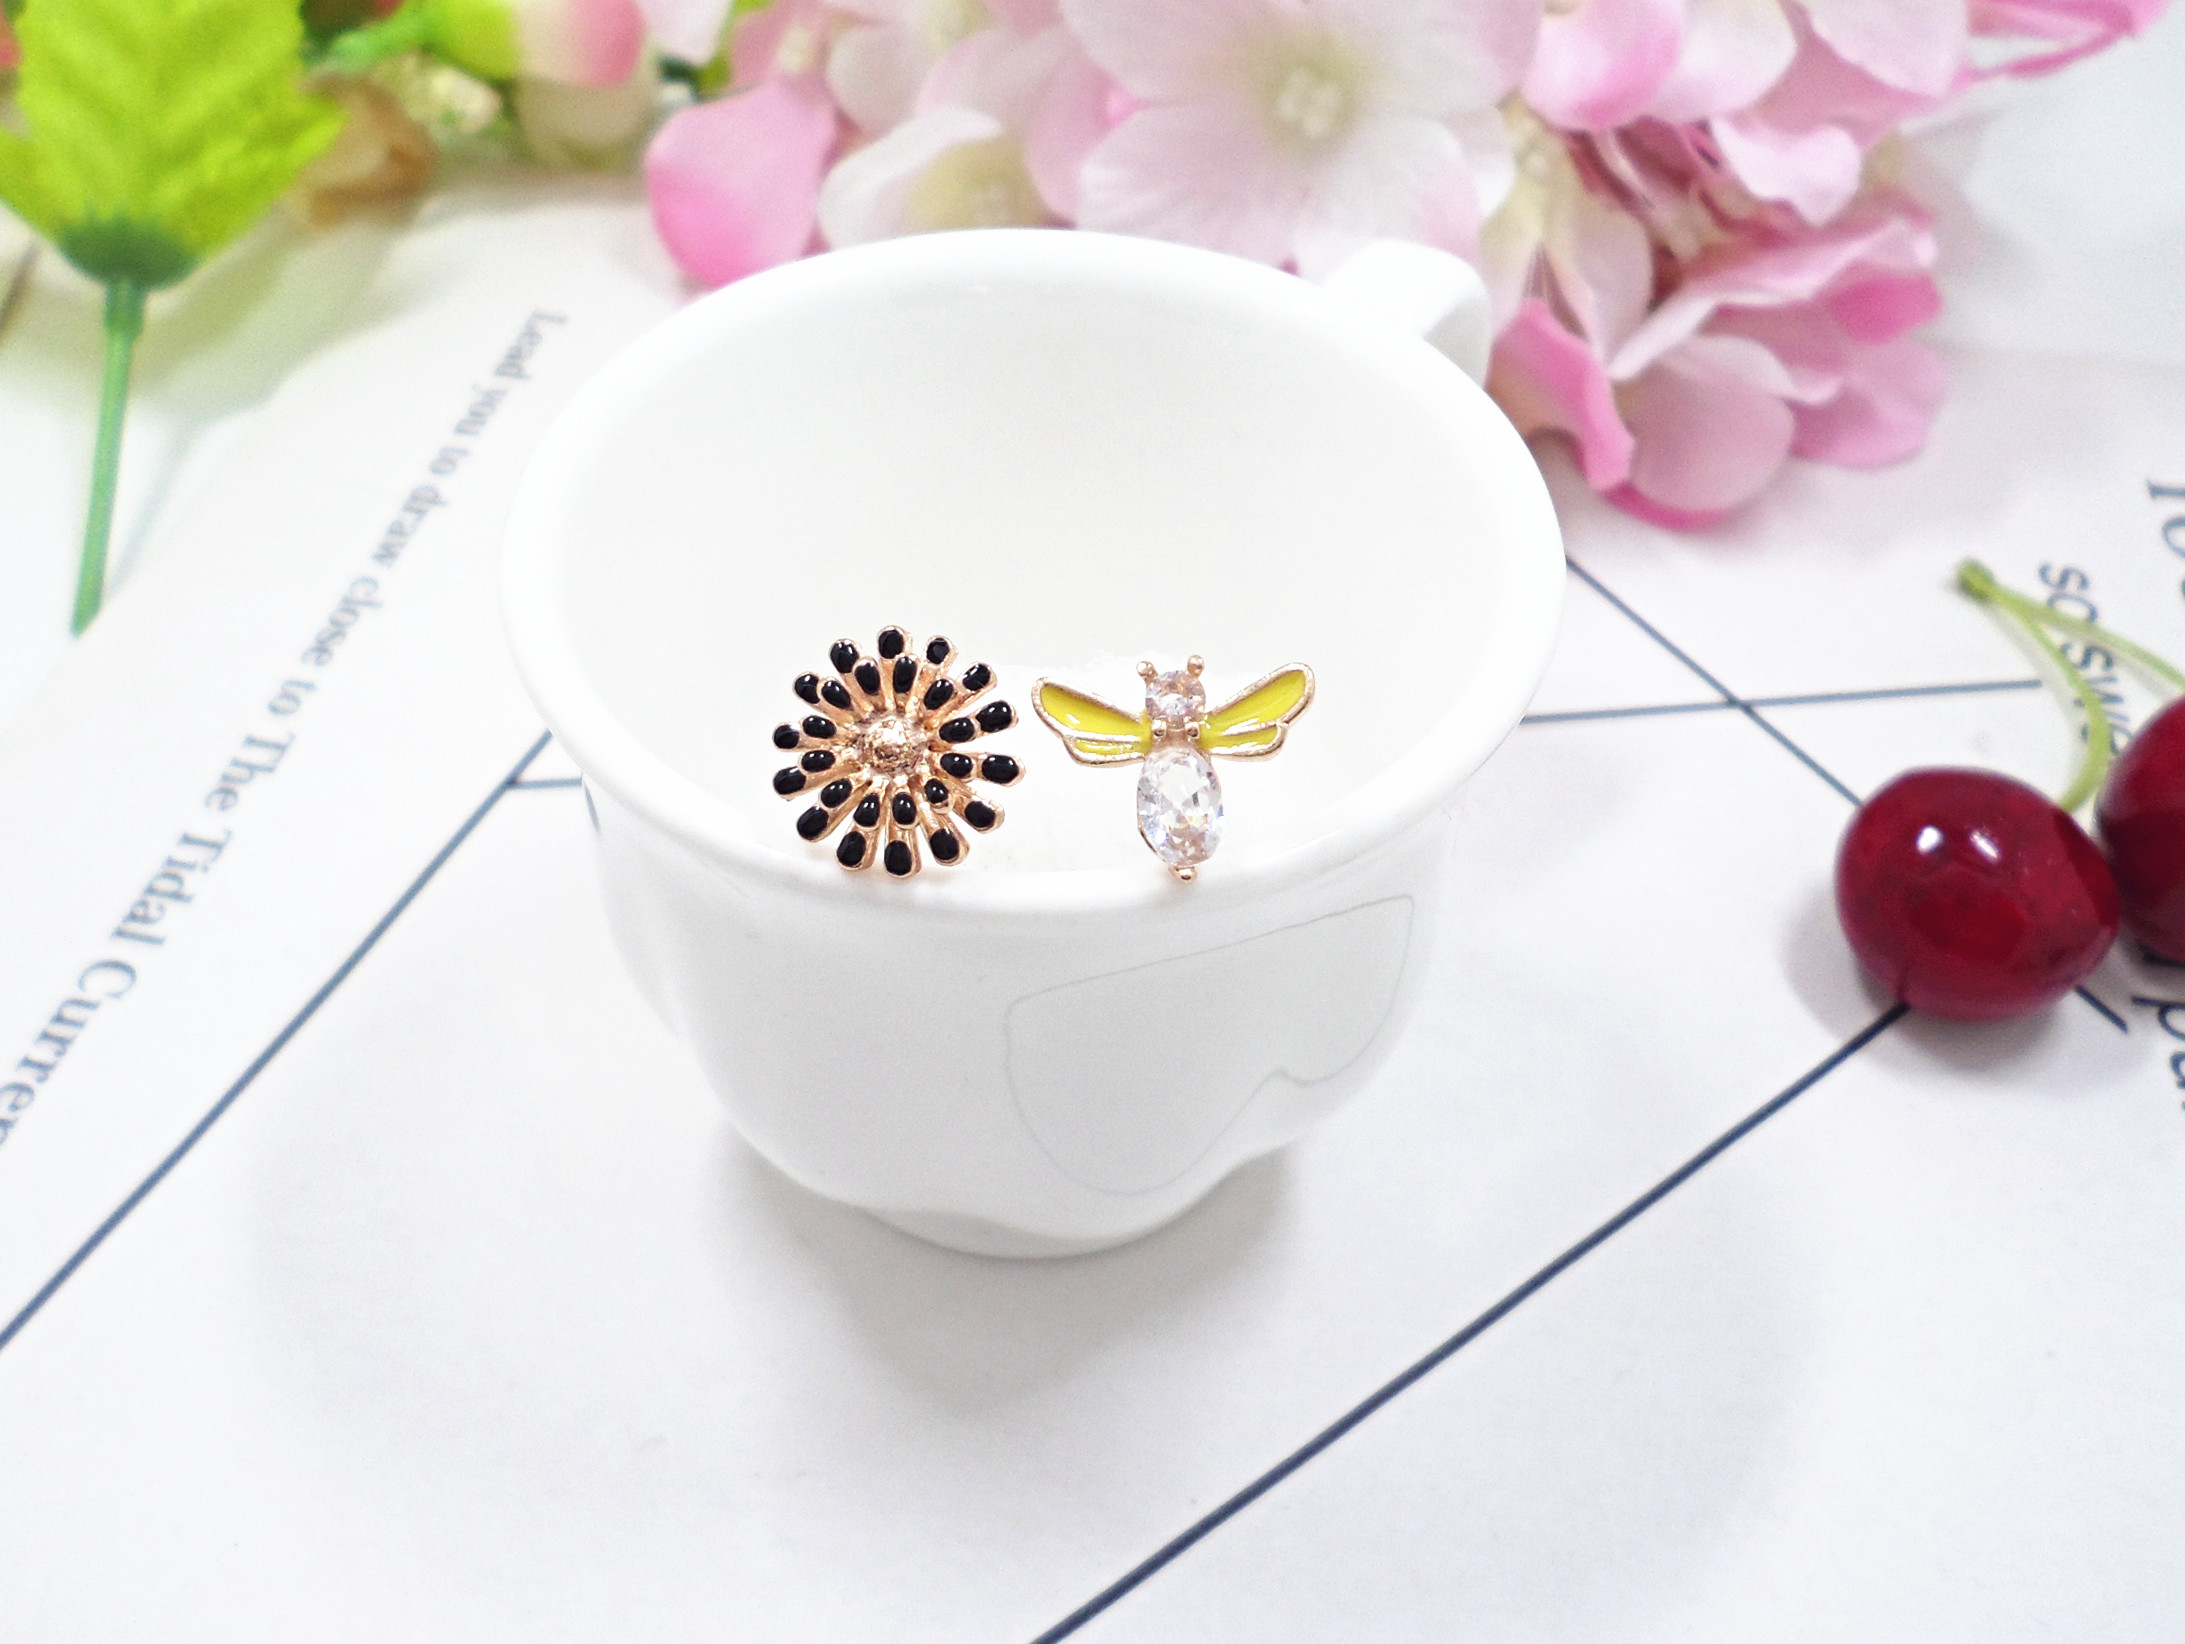 Wholesale Lot Zinc Alloy Metal Cute Bee Sunflower Shape Enamel Charms Fashion Earring Bracelet Making Pendants VGE185 3